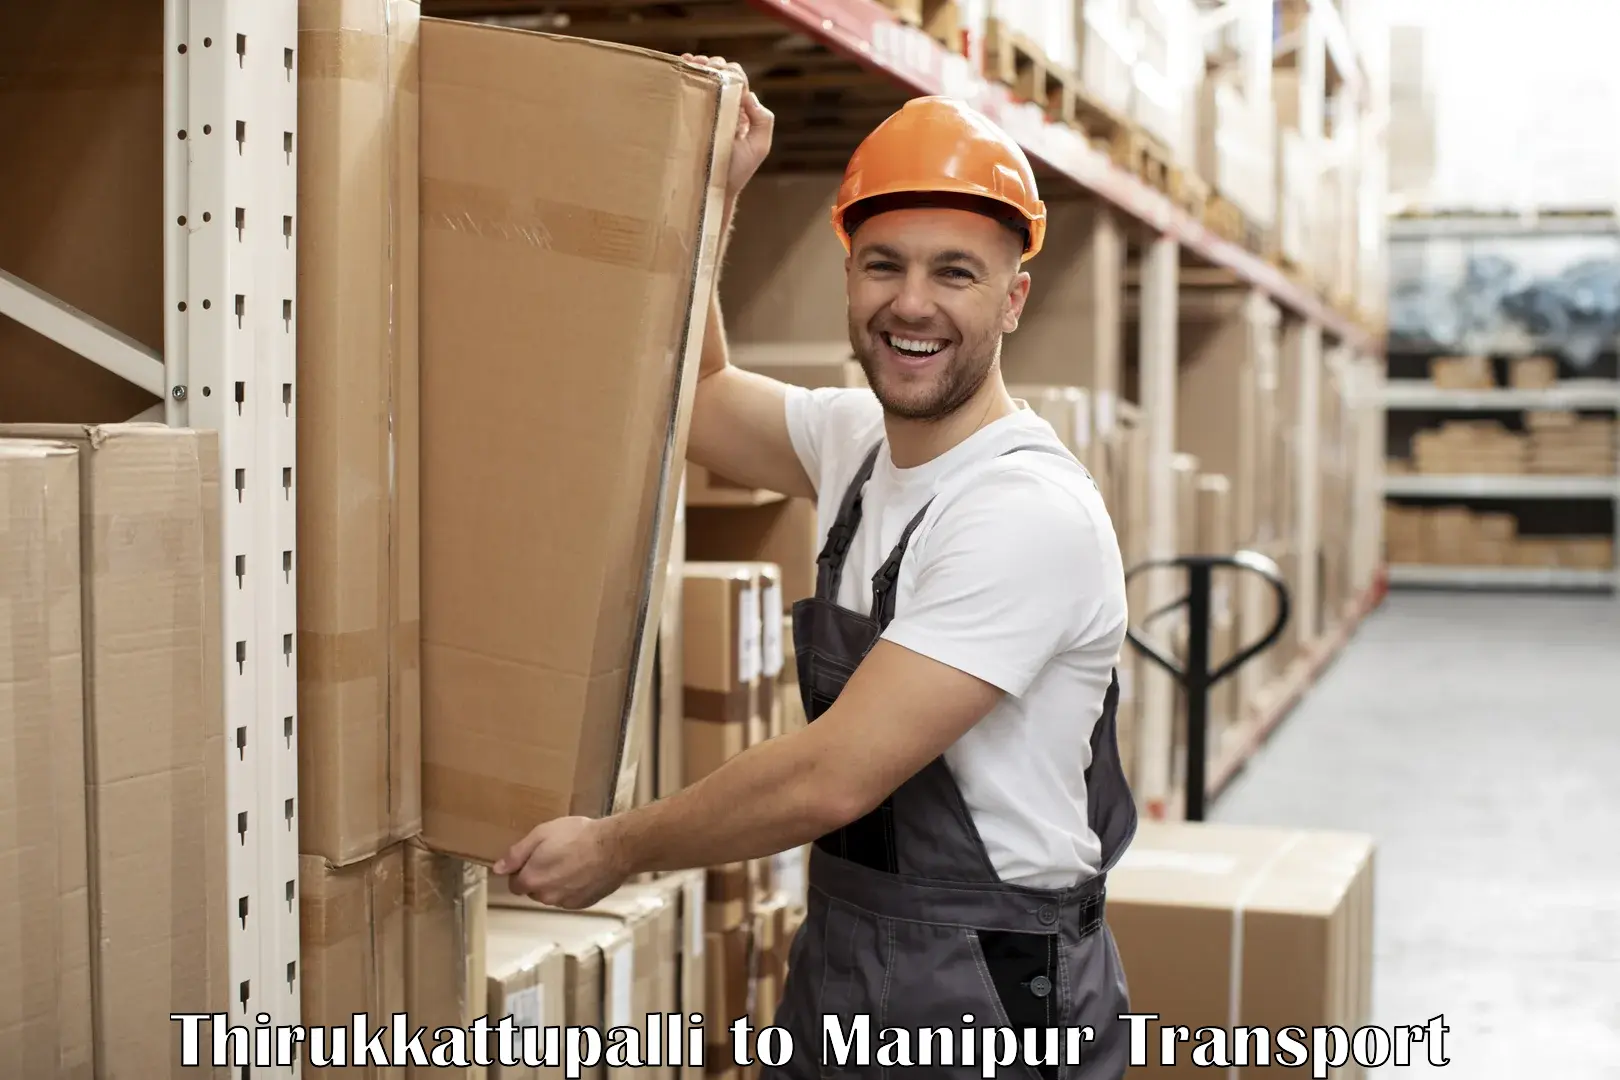 Lorry transport service Thirukkattupalli to Churachandpur